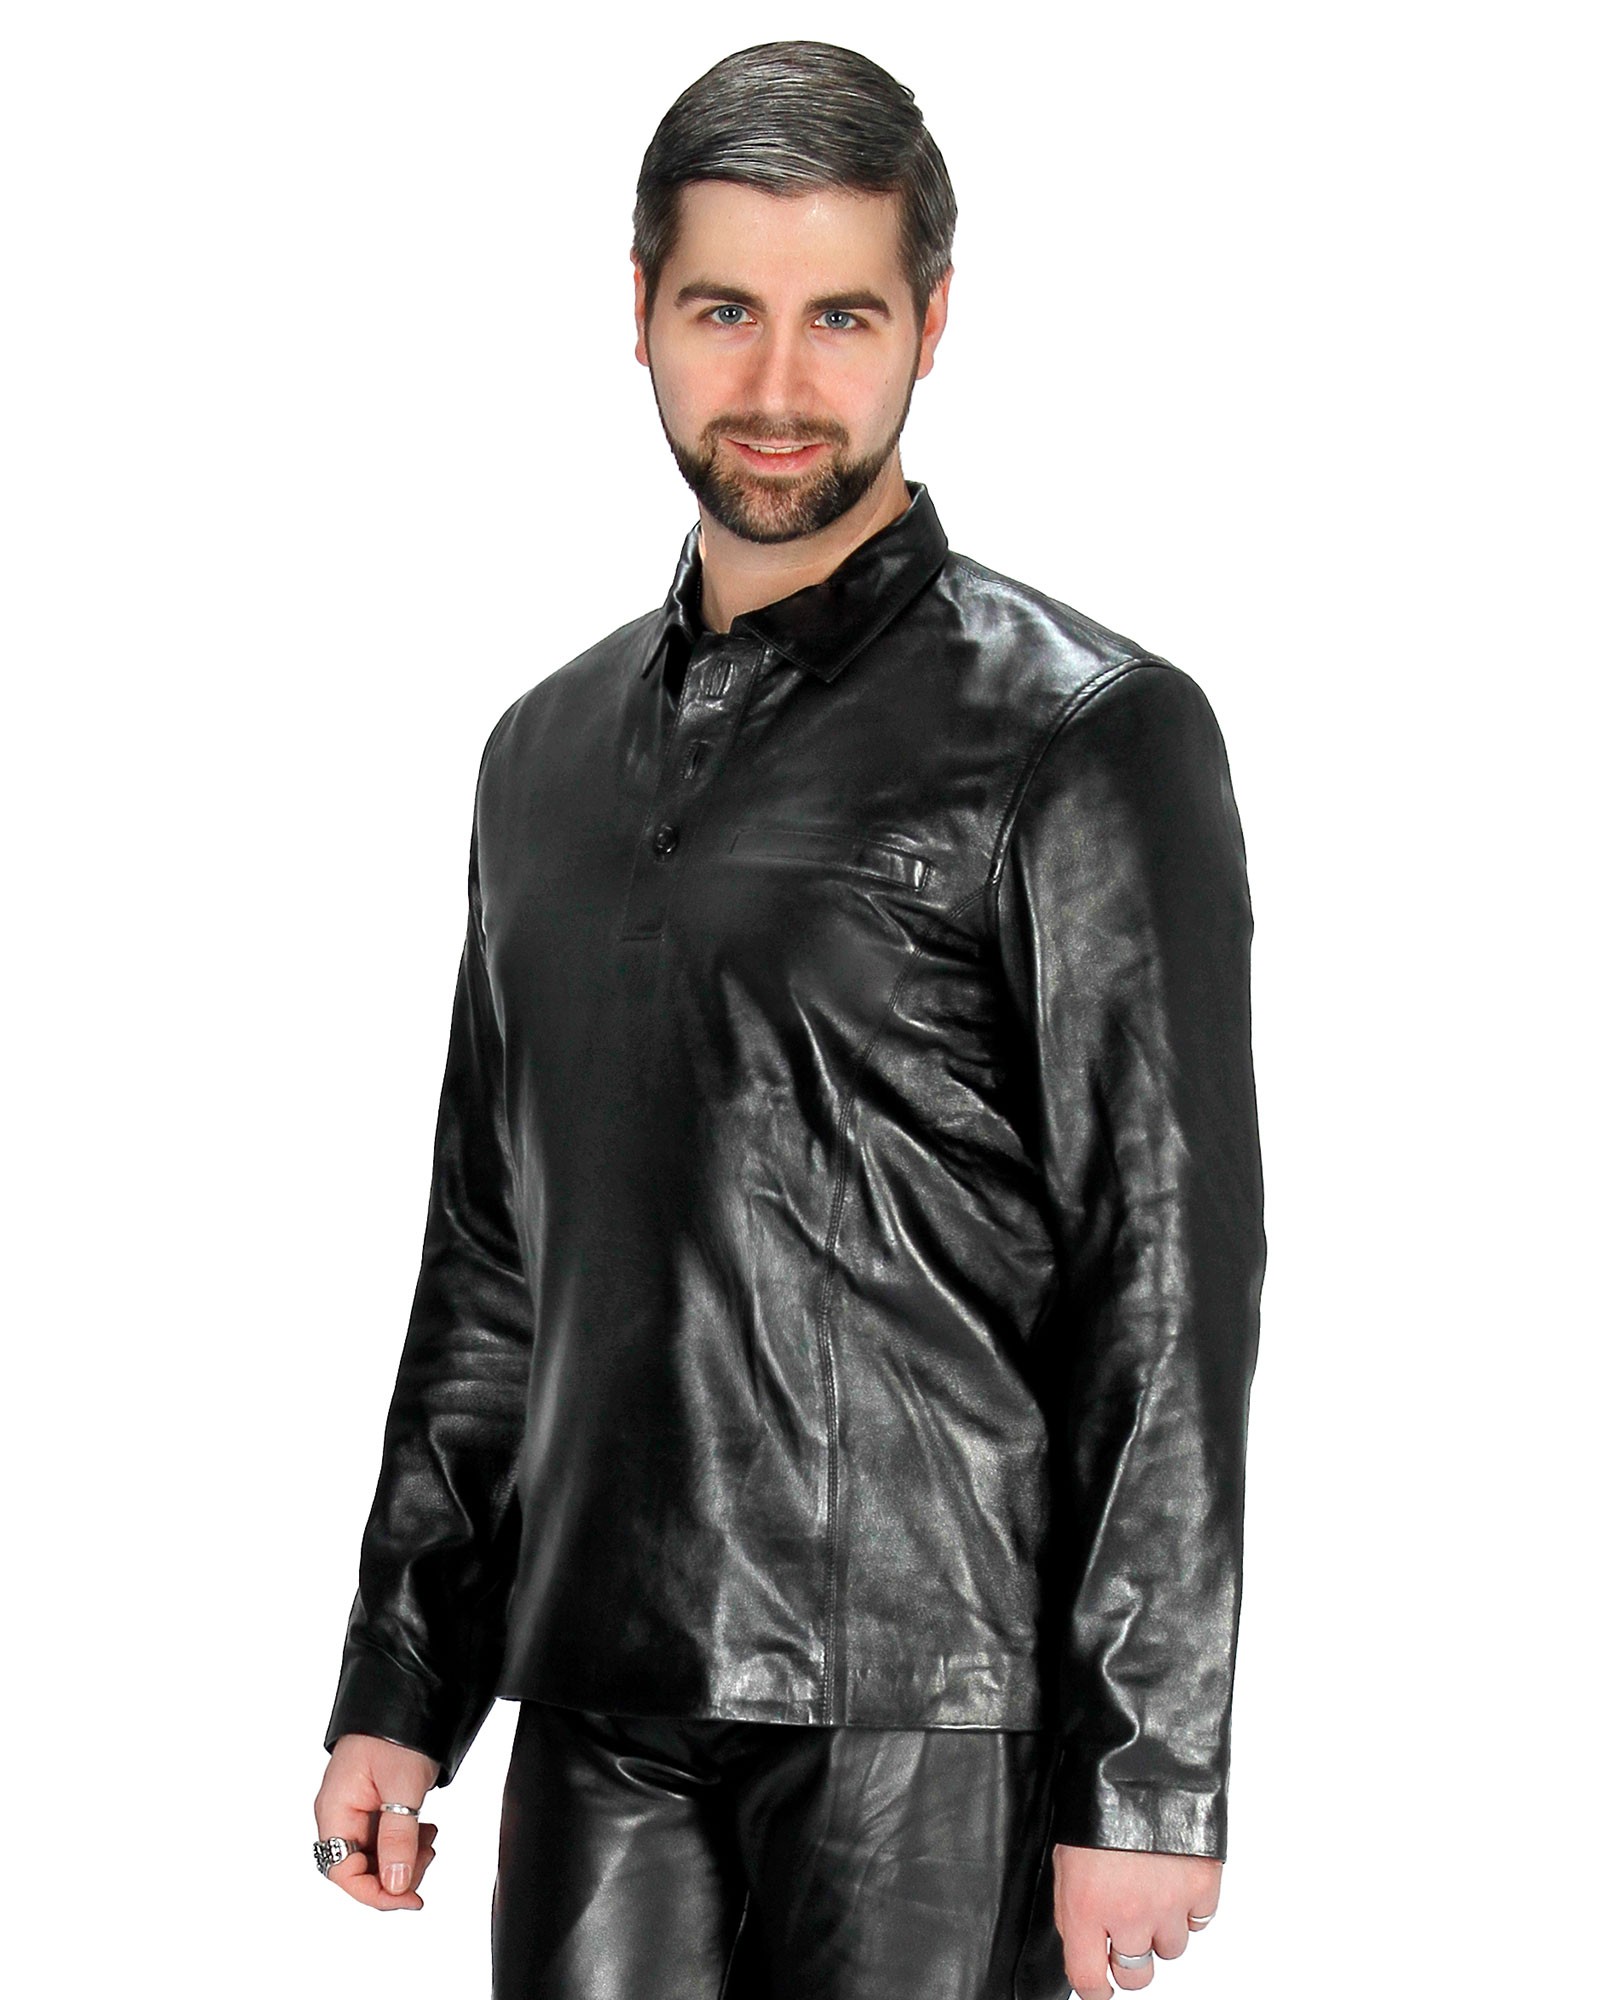 Leather polo shirt Oliver black Genuine nappa leather men's shirt long arm  Bitte Größe wählen (Select) Größe S